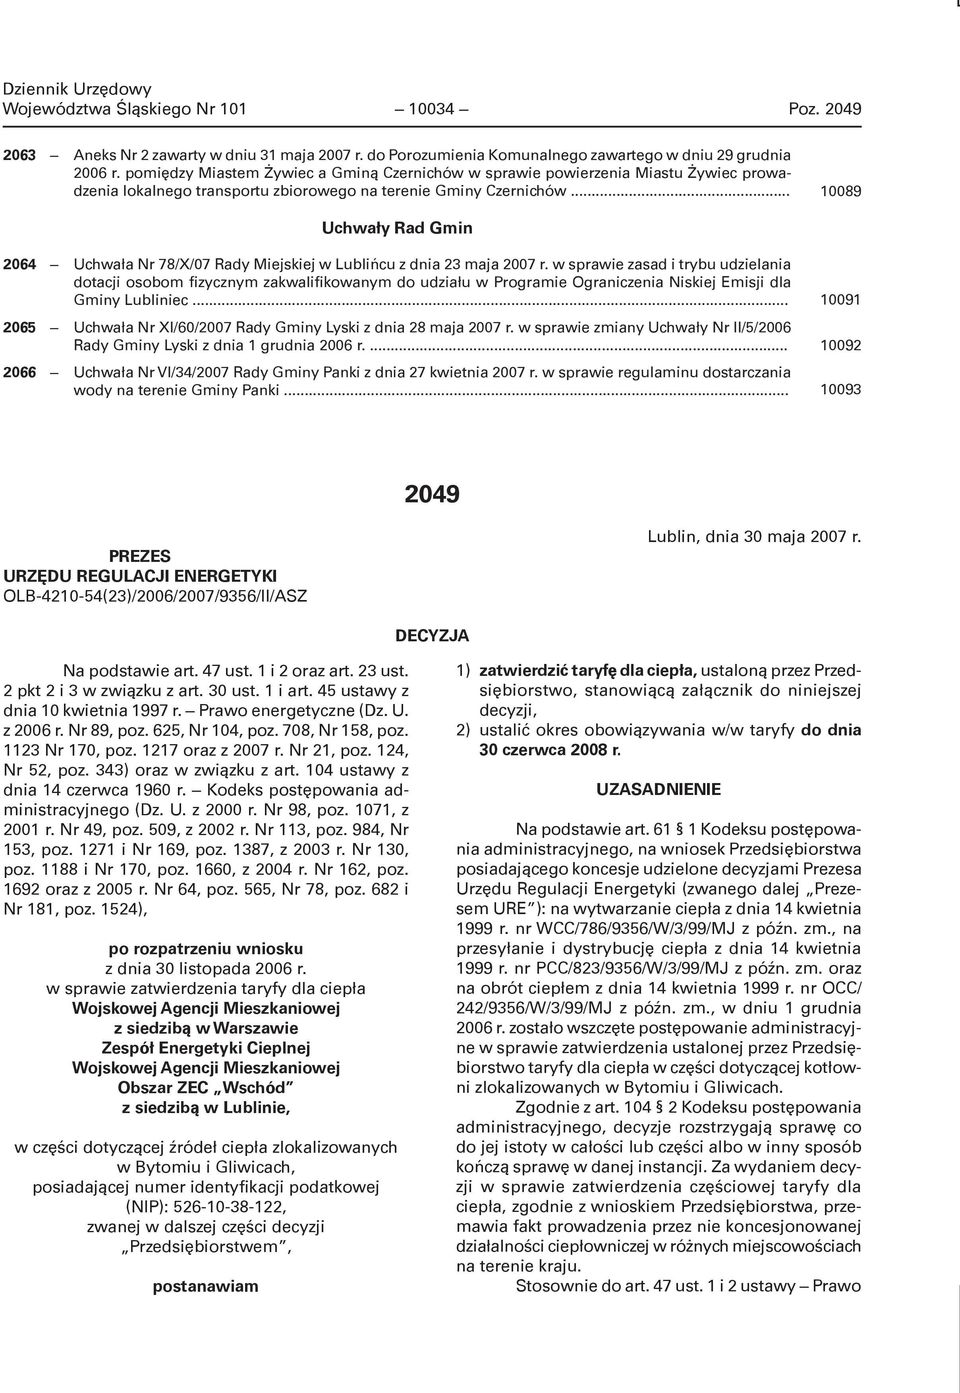 .. 10089 Uchwały Rad Gmin 2064 Uchwała Nr 78/X/07 Rady Miejskiej w Lublińcu z dnia 23 maja 2007 r.